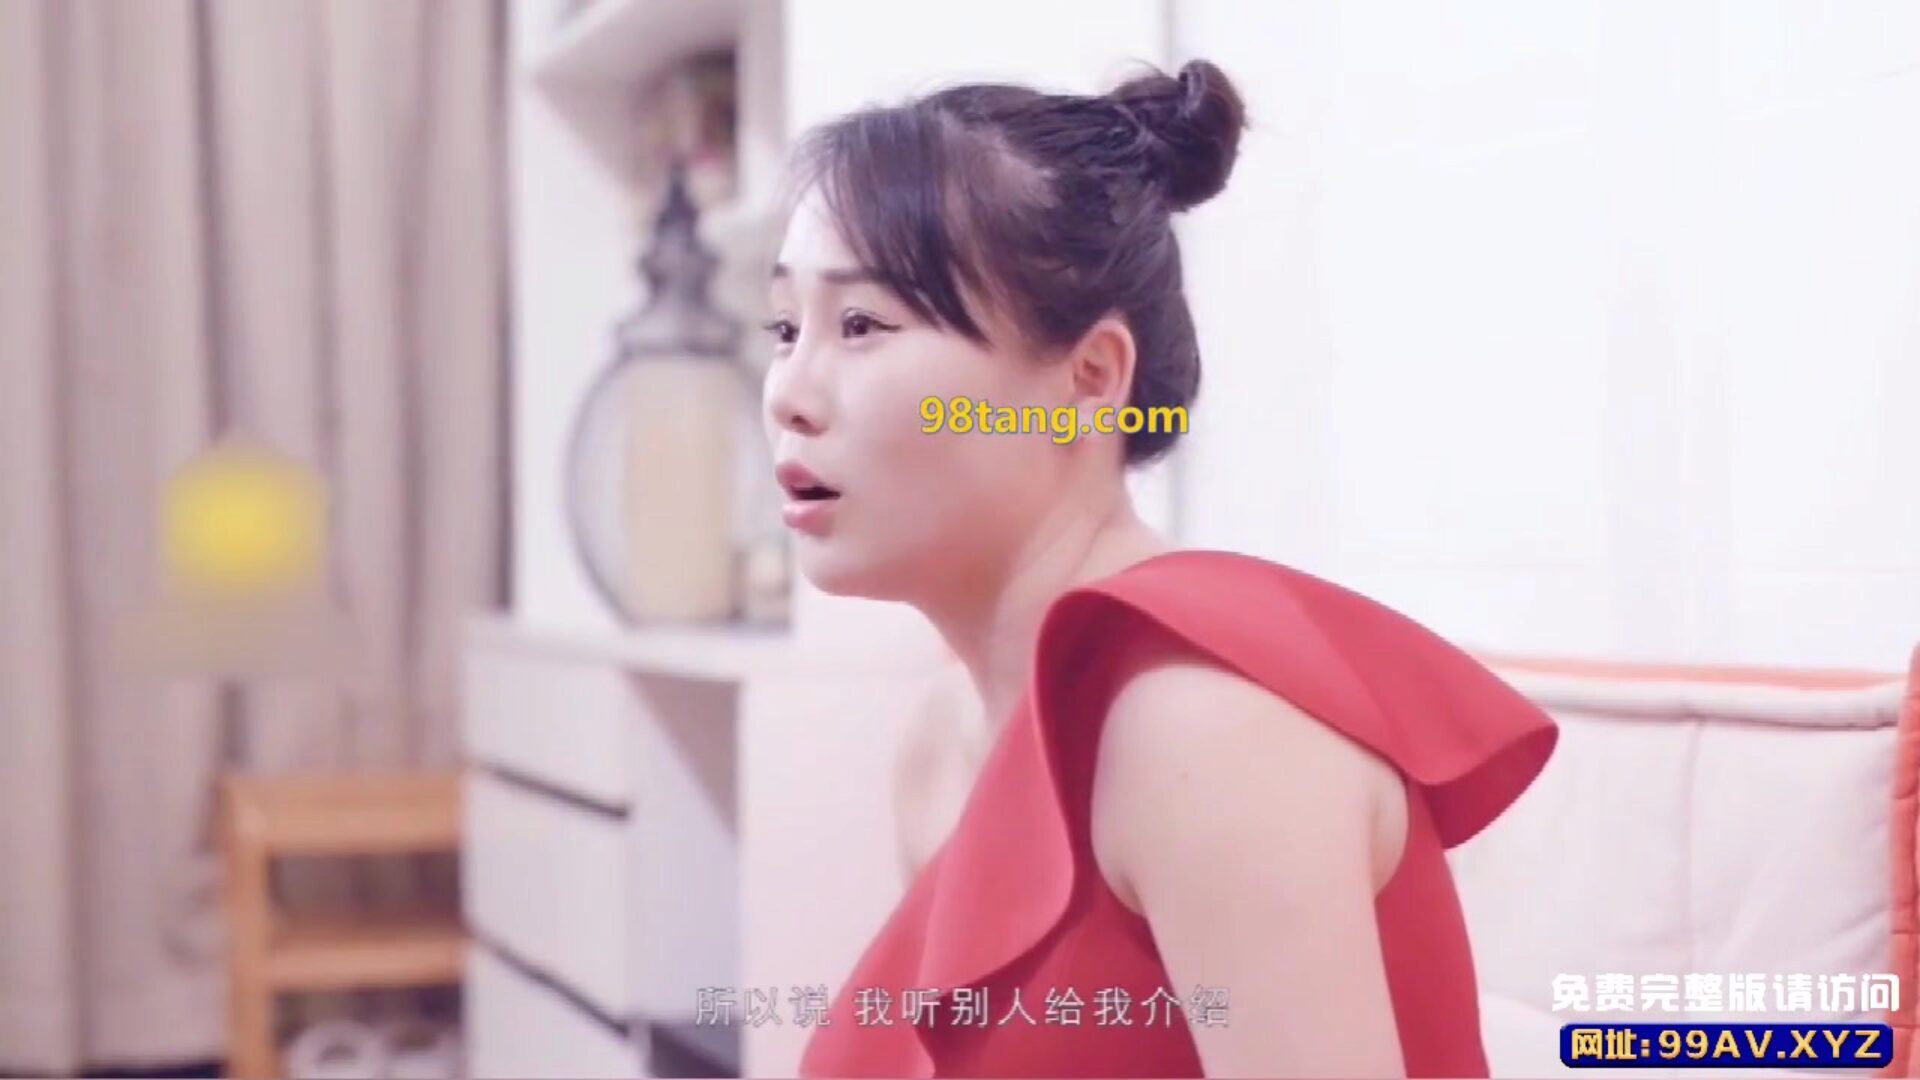 chinese av pornografische hypnotiseur meiden komen naar de deur Chinese av pornografische hypnotiseur liefjes komen naar de deur om te vragen om mdcm te behandelen